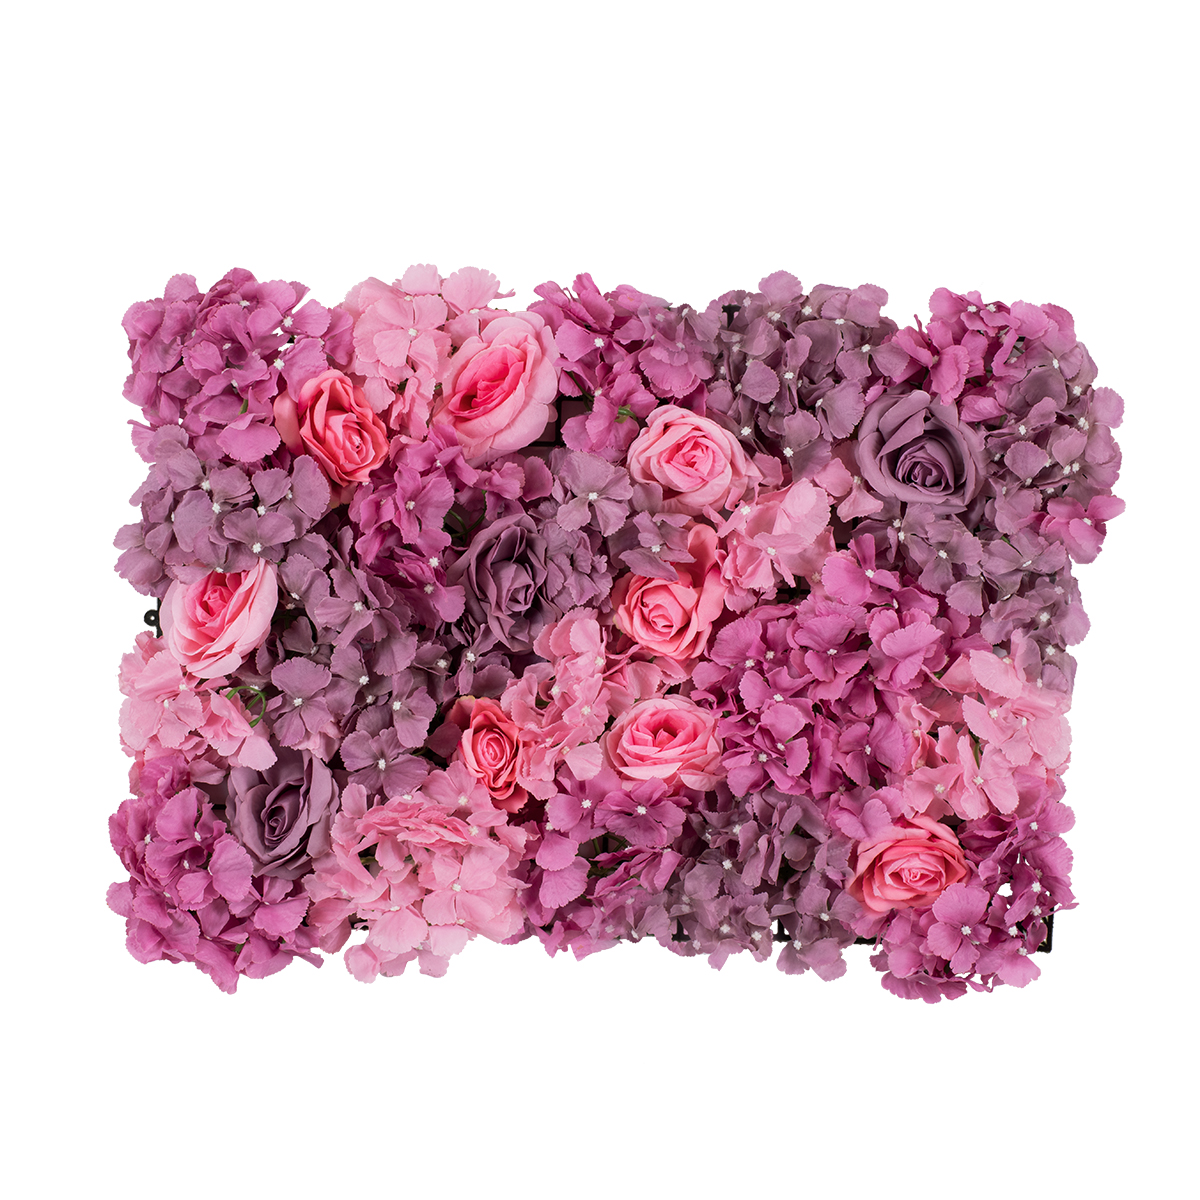 GloboStar® Artificial Garden ROSES STORY PURPLE 78336 Τεχνητό Διακοσμητικό Πάνελ Λουλουδιών – Κάθετος Κήπος σύνθεση Αμβροσία Μ60 x Π40 x Υ6cm